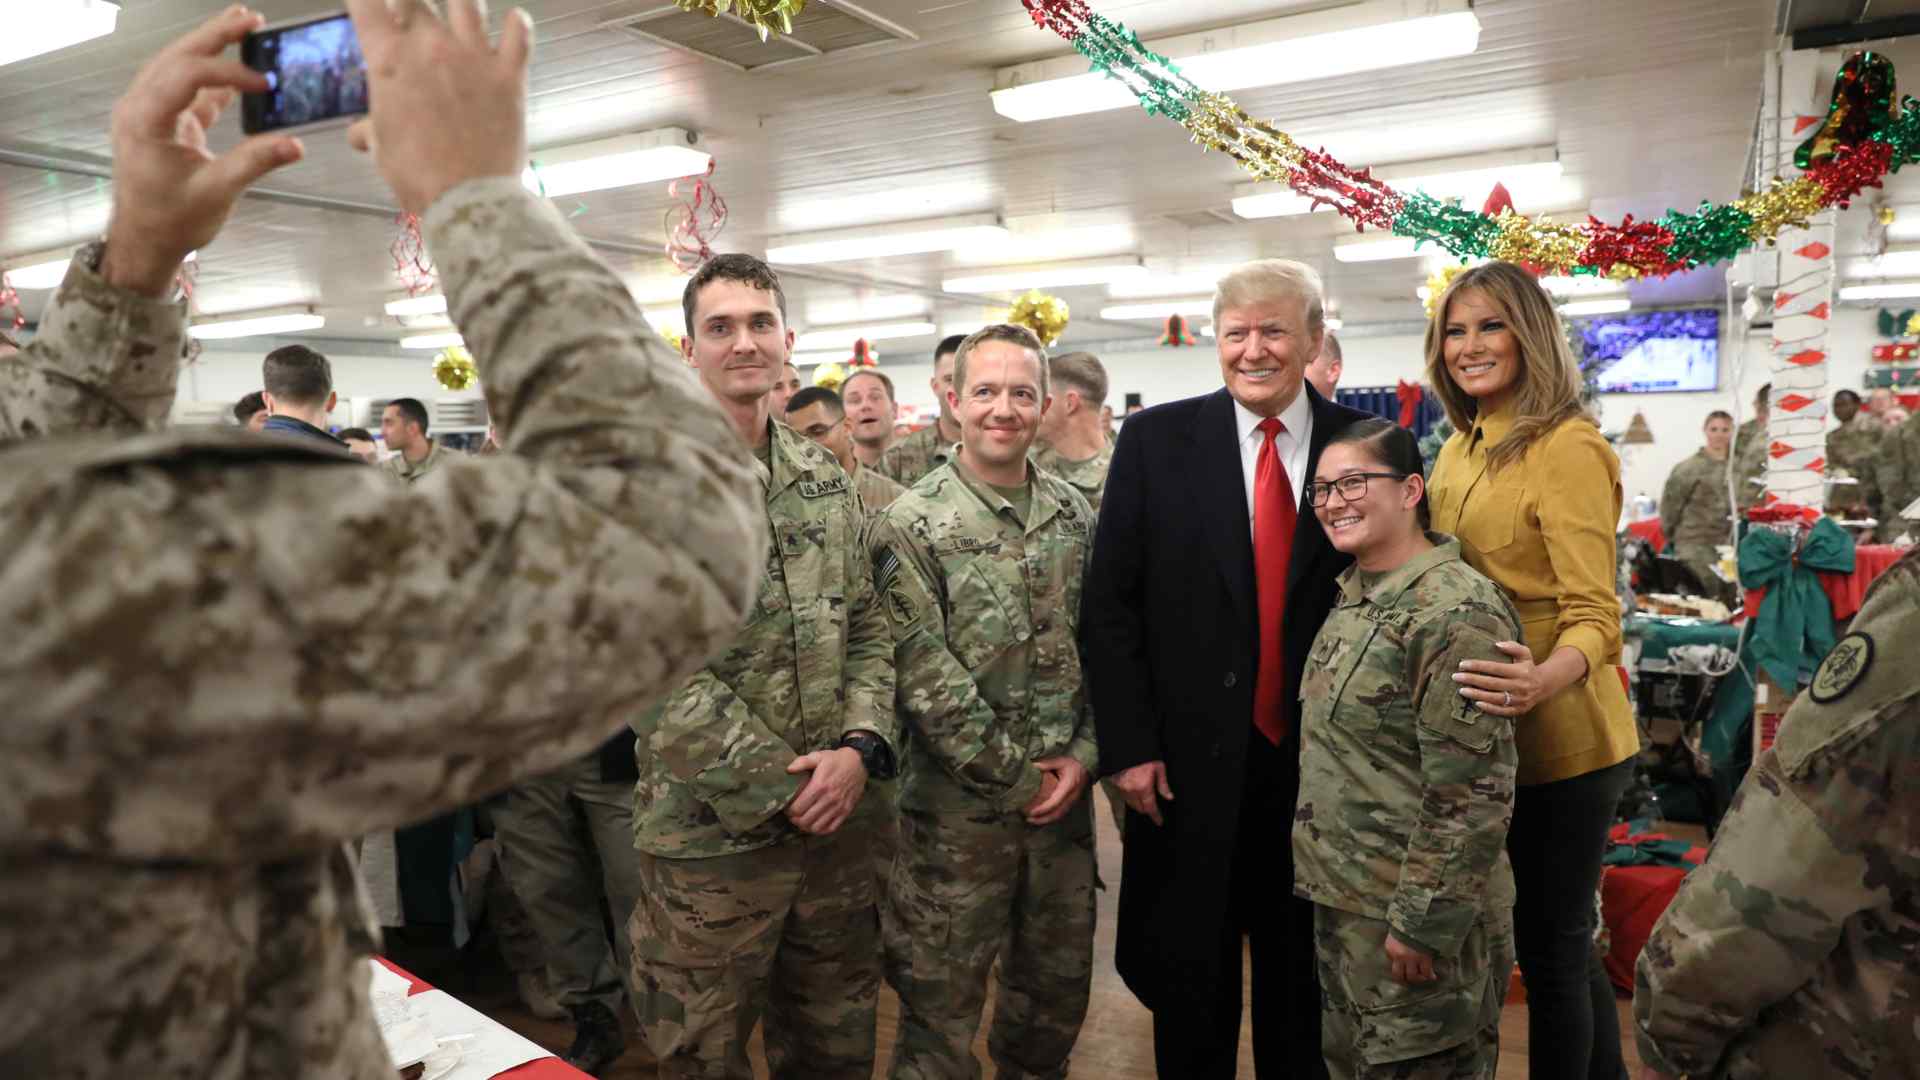 Visita sorpresa de Trump y Melania a las tropas de EEUU en Irak